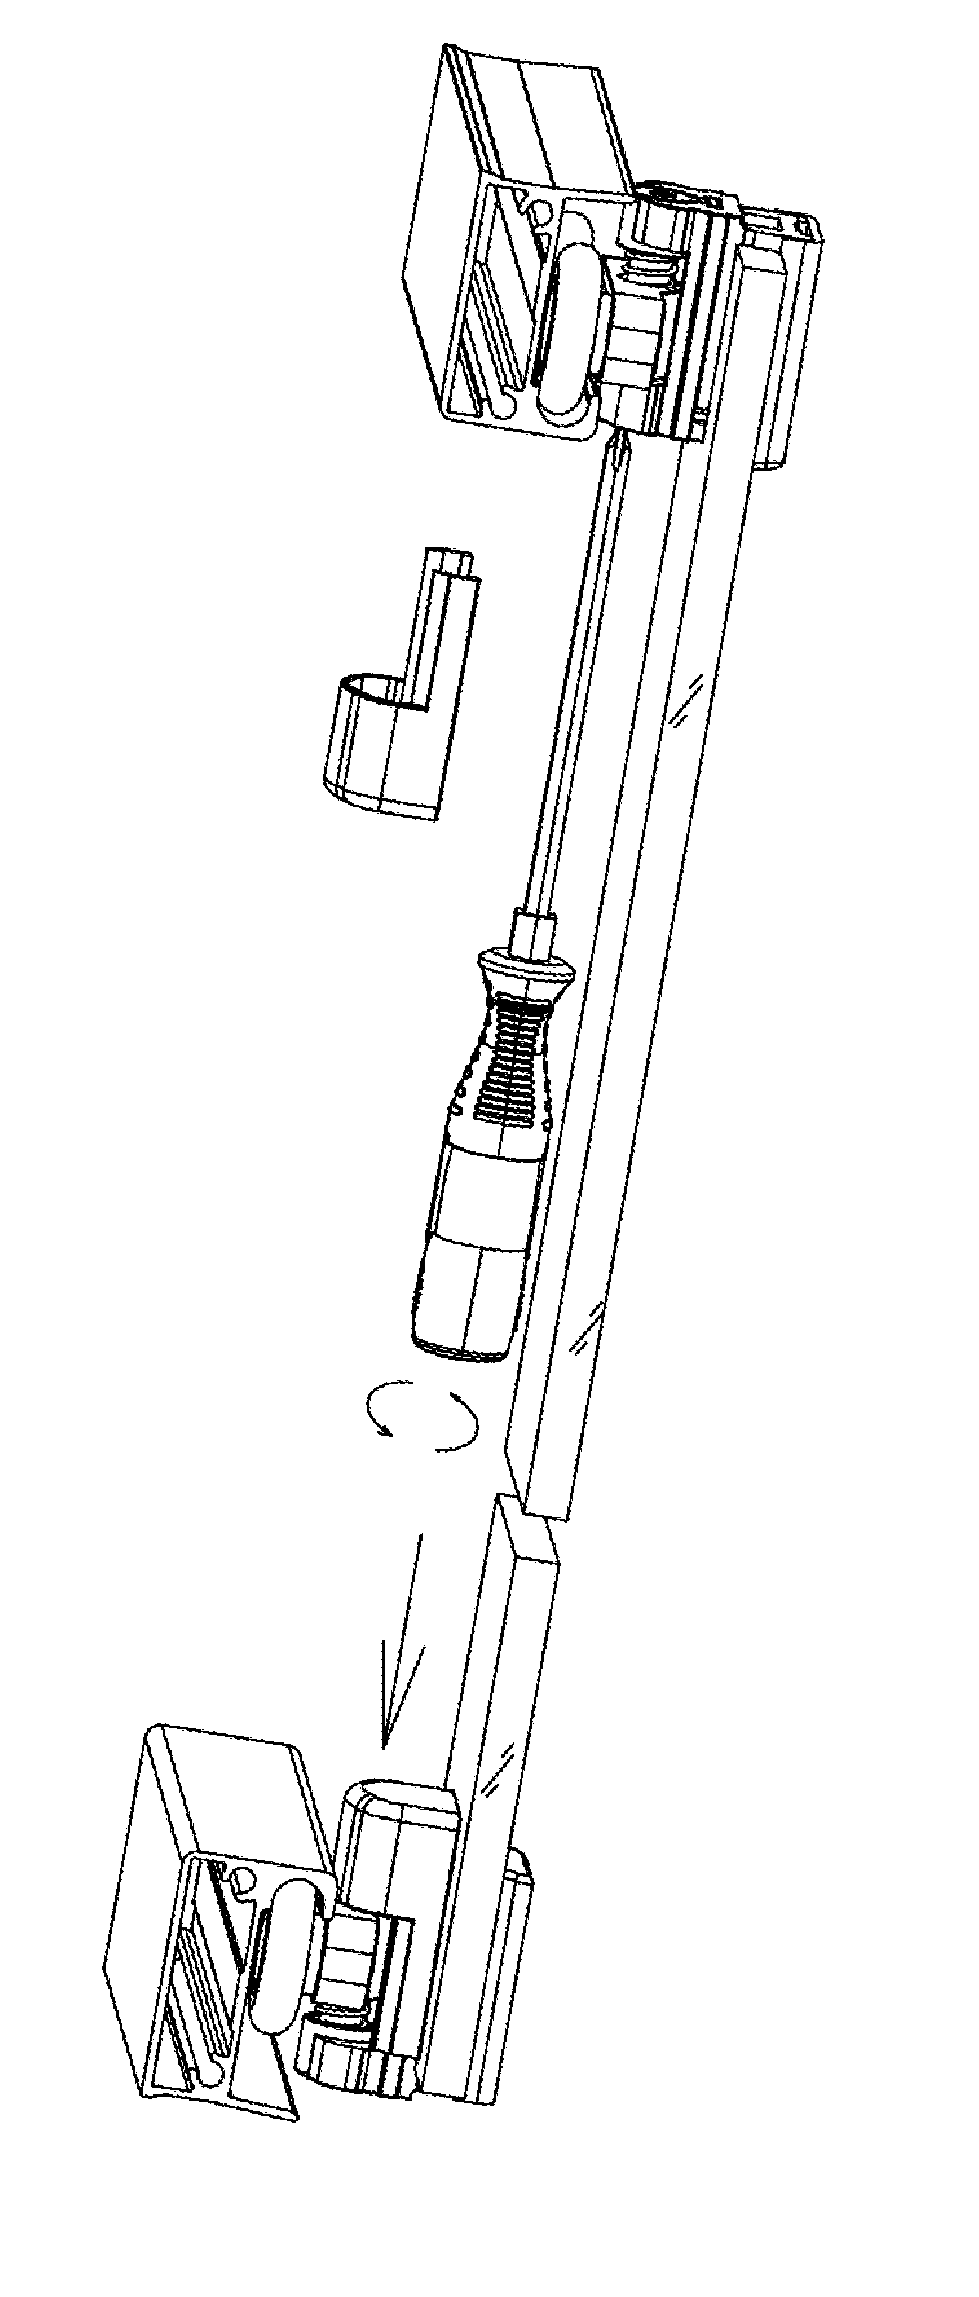 Shower door pulley device